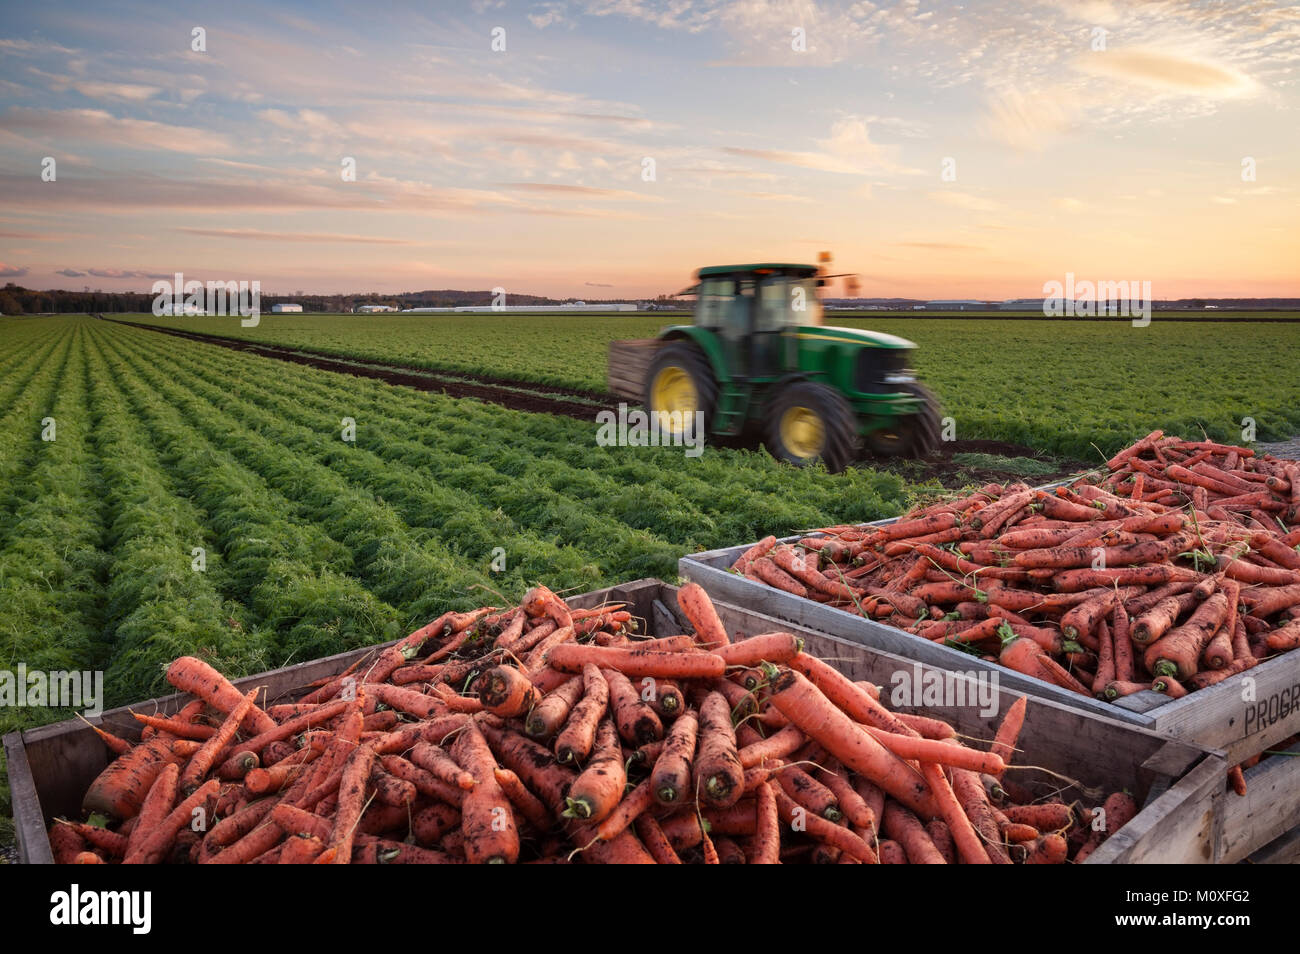 Ein Traktor Karotten sammeln mit Kisten mit Karotten und ein reifes Feld der Karotten im Hintergrund. Holland Marsh in Bradford West Gwillimbury. Stockfoto